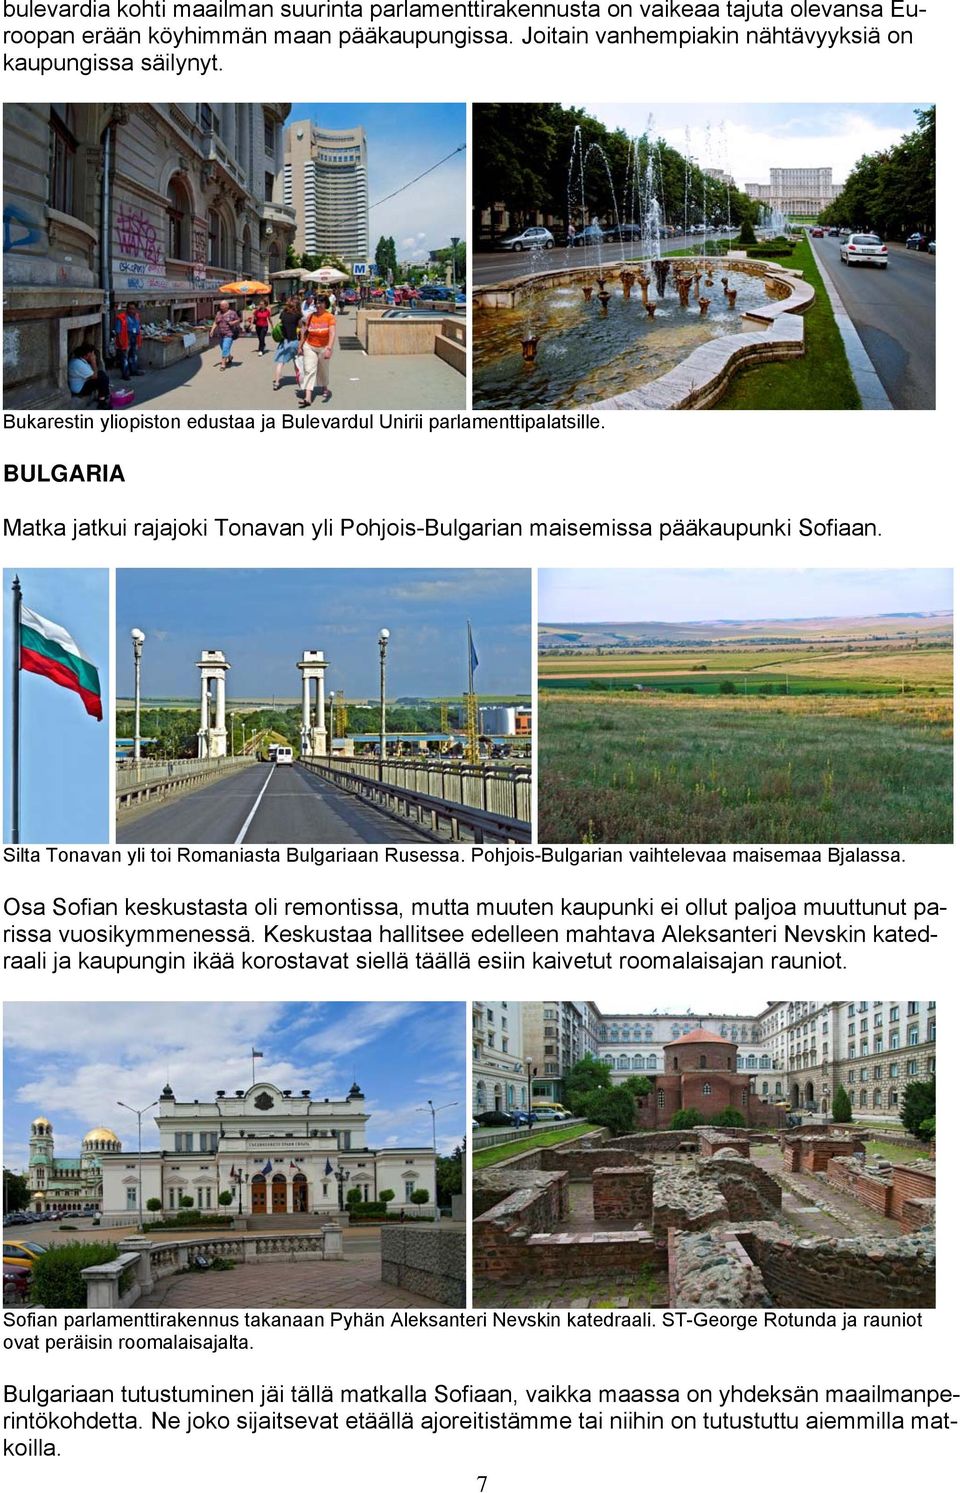 Silta Tonavan yli toi Romaniasta Bulgariaan Rusessa. Pohjois-Bulgarian vaihtelevaa maisemaa Bjalassa.